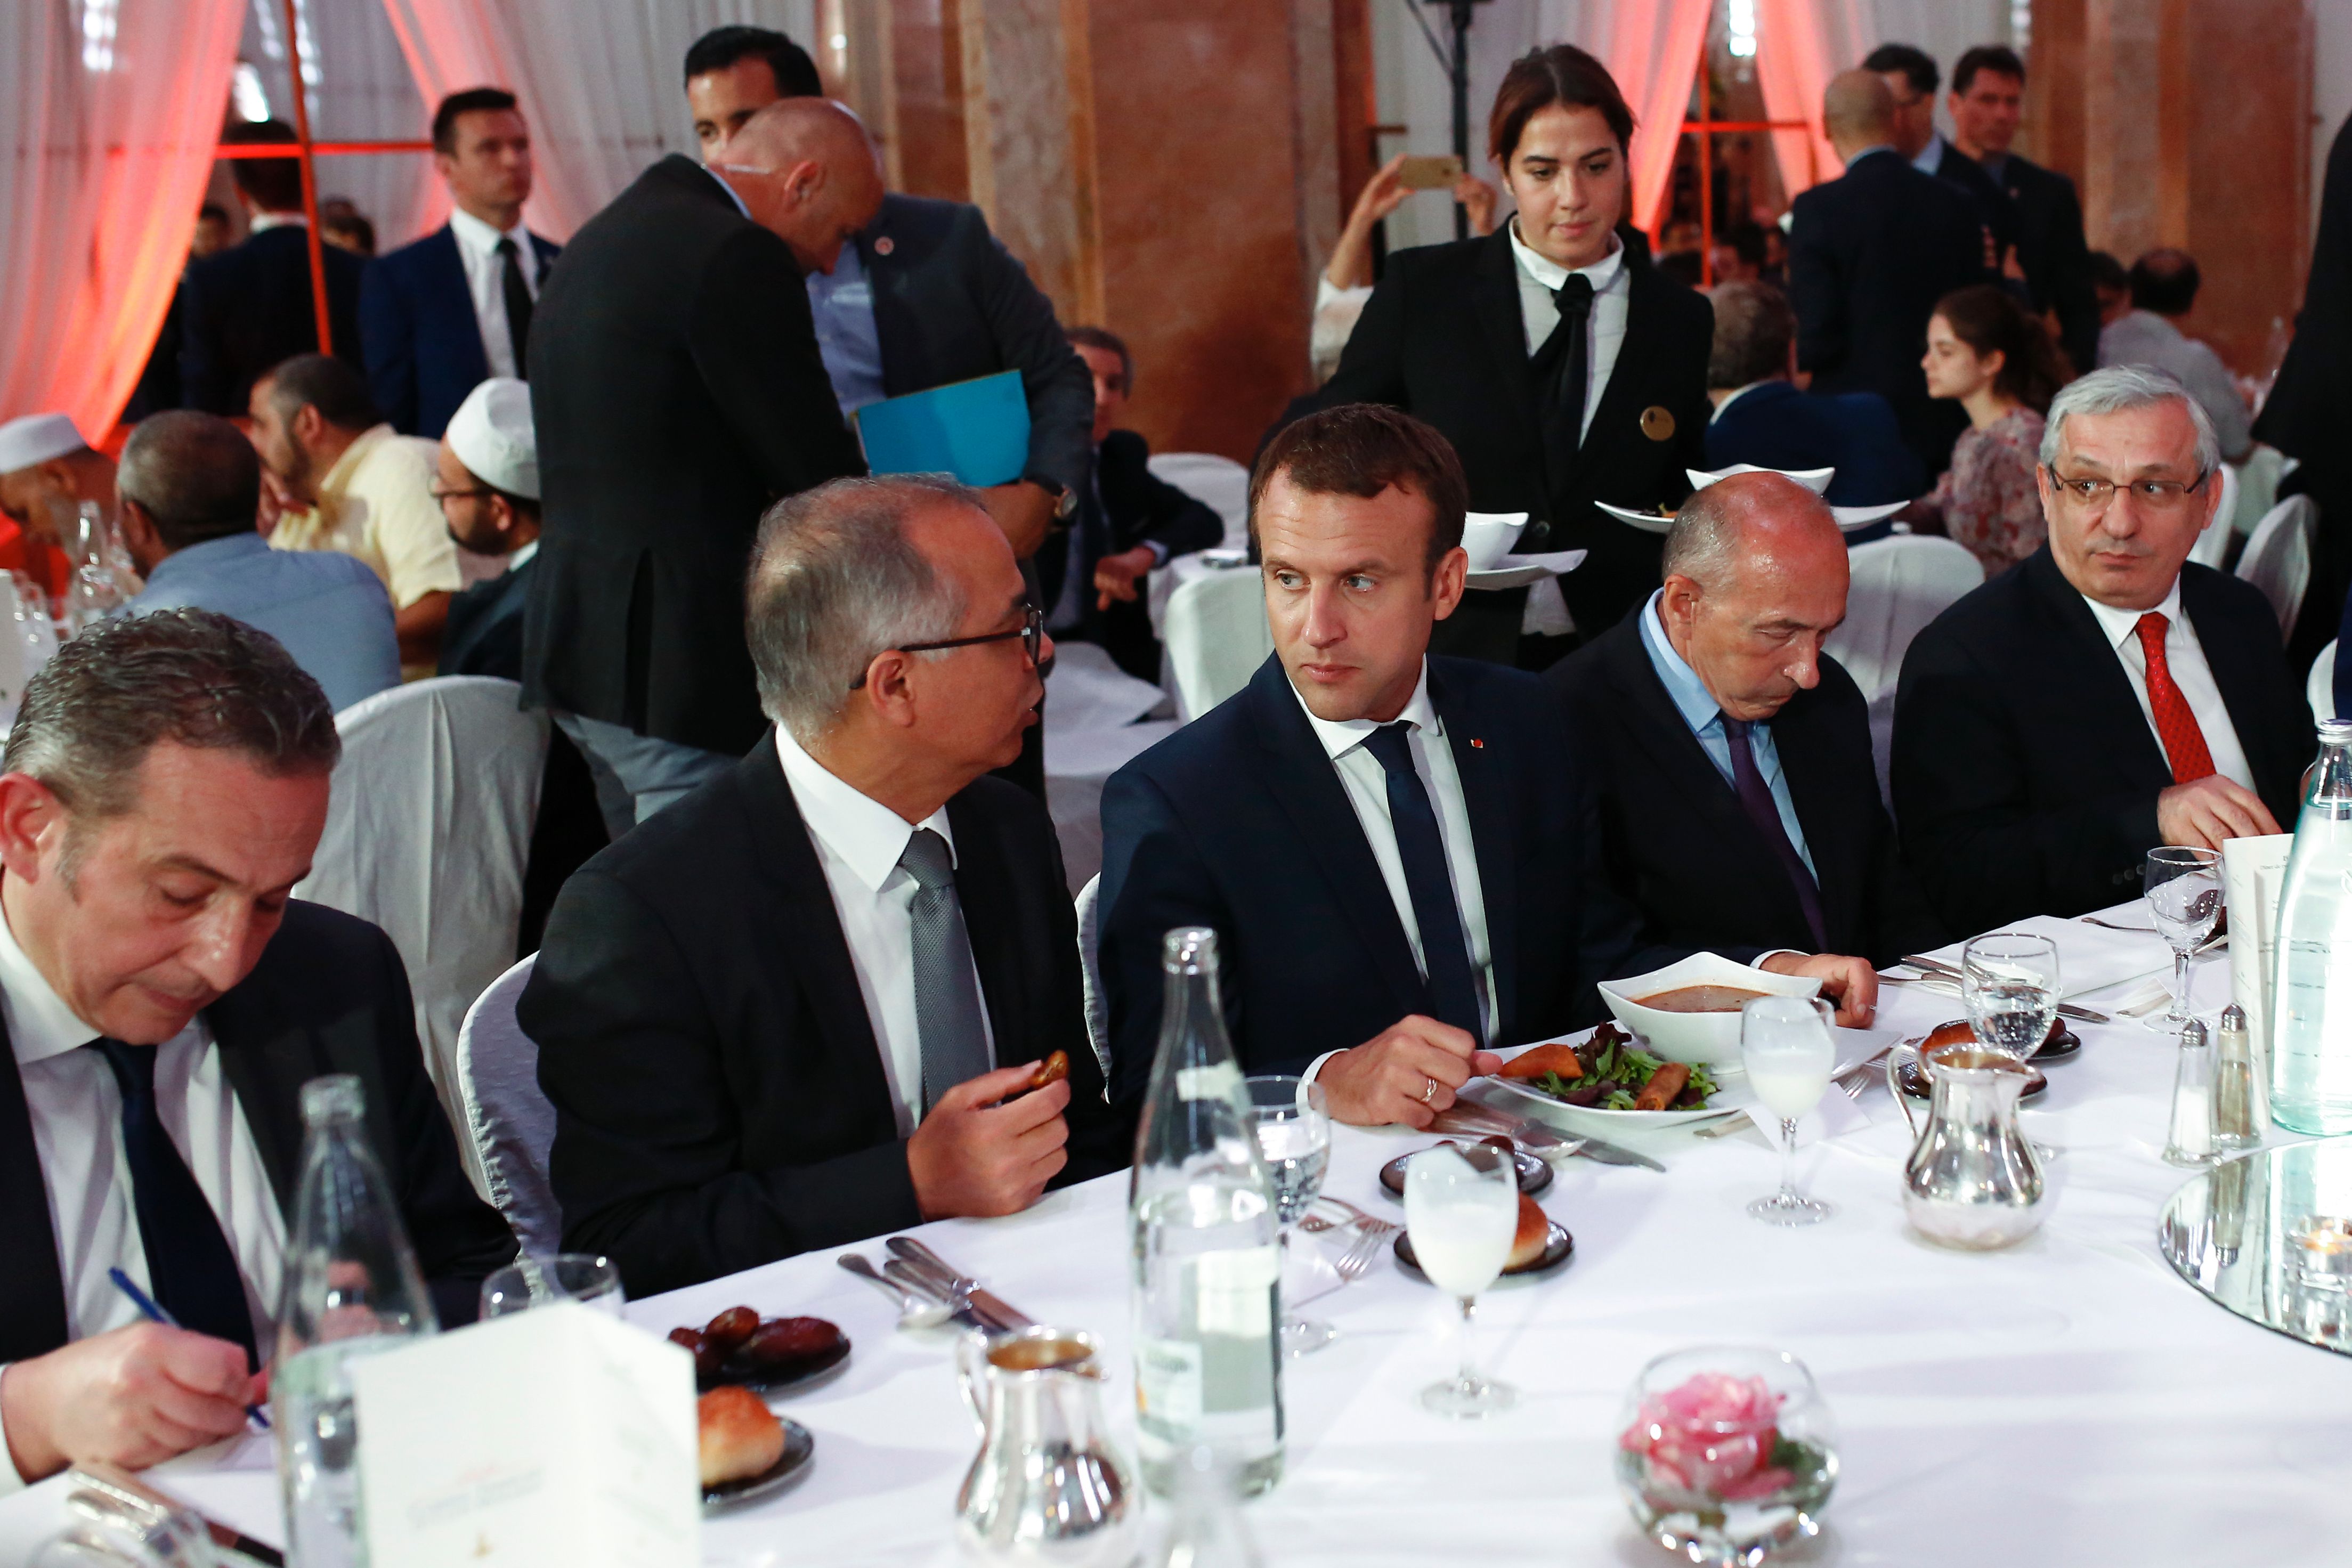 فطار رمضاني يشارك فيه الرئيس الفرنسي